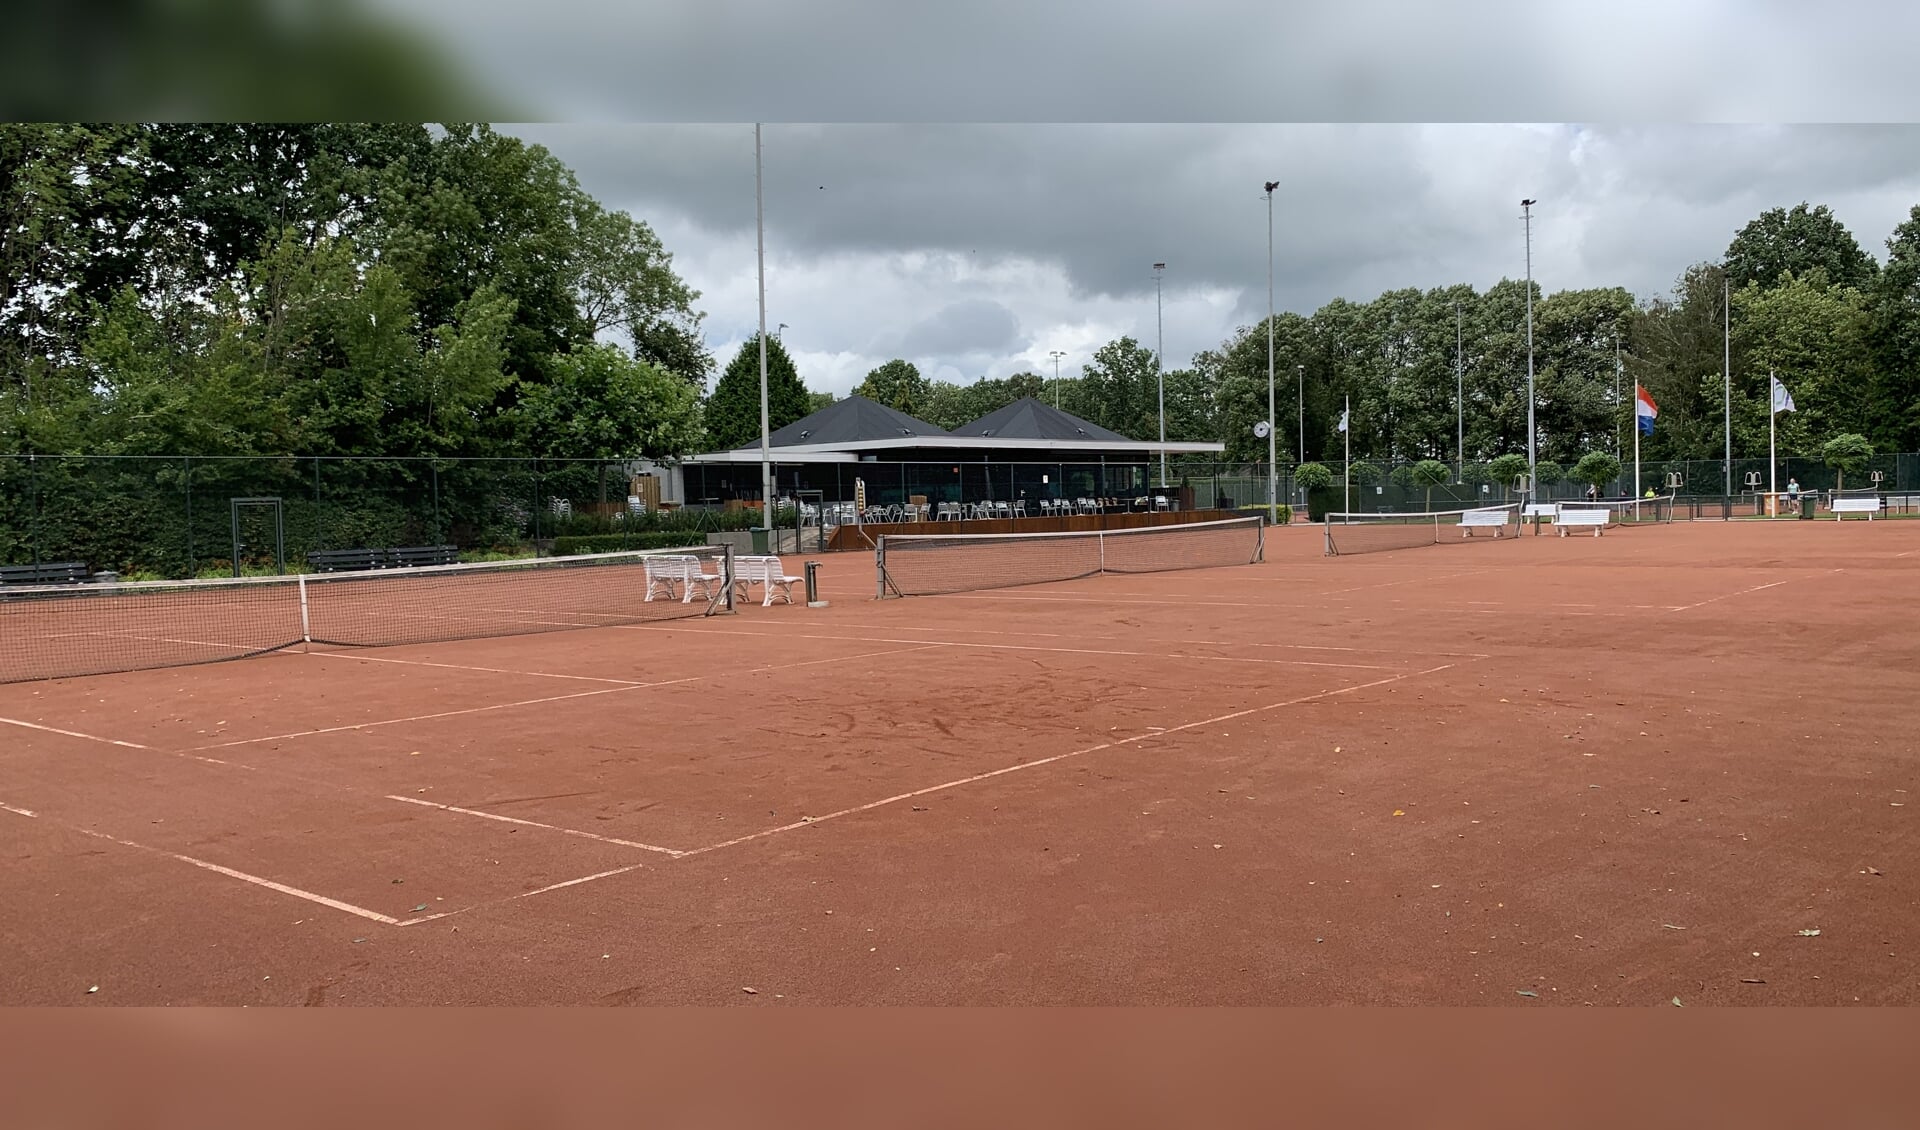 Tennispark Oudenbossche Tennis Club.